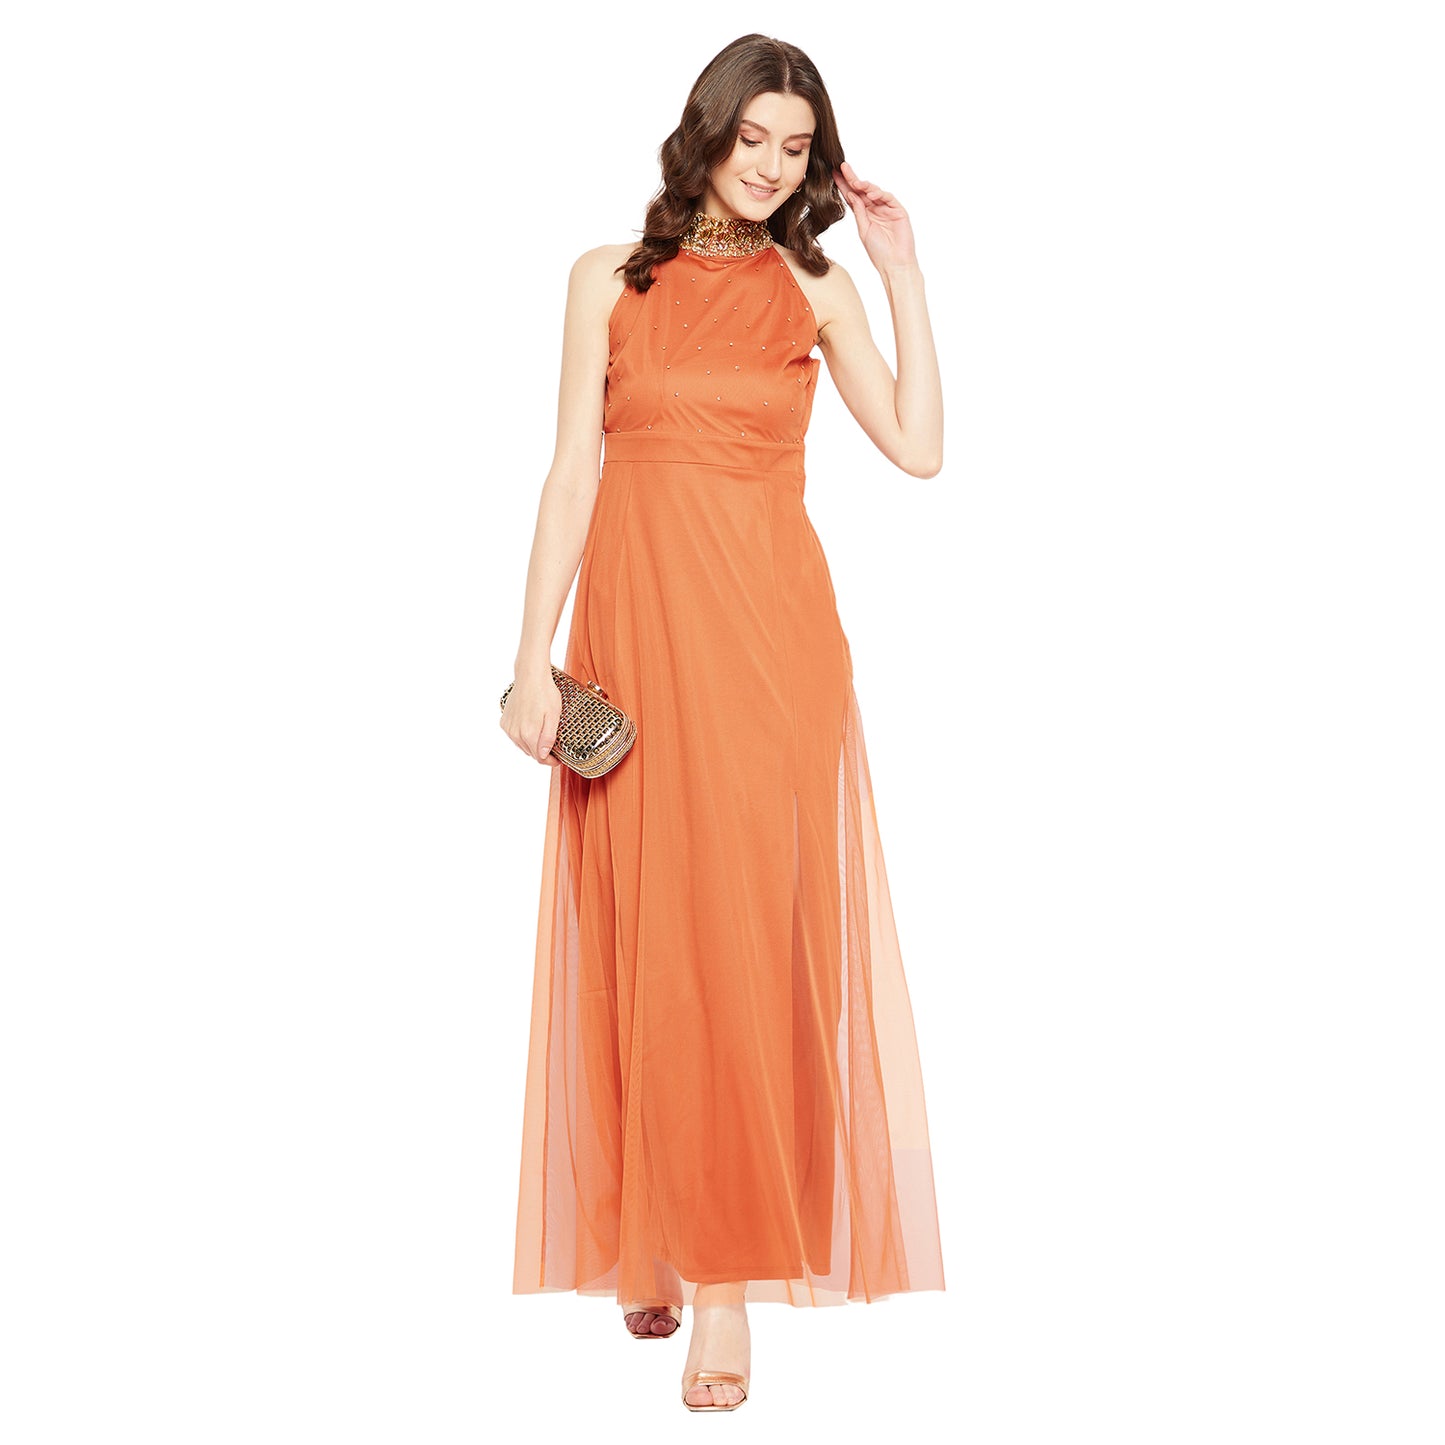 LY2 Embellished Orange long Dress with Side slit